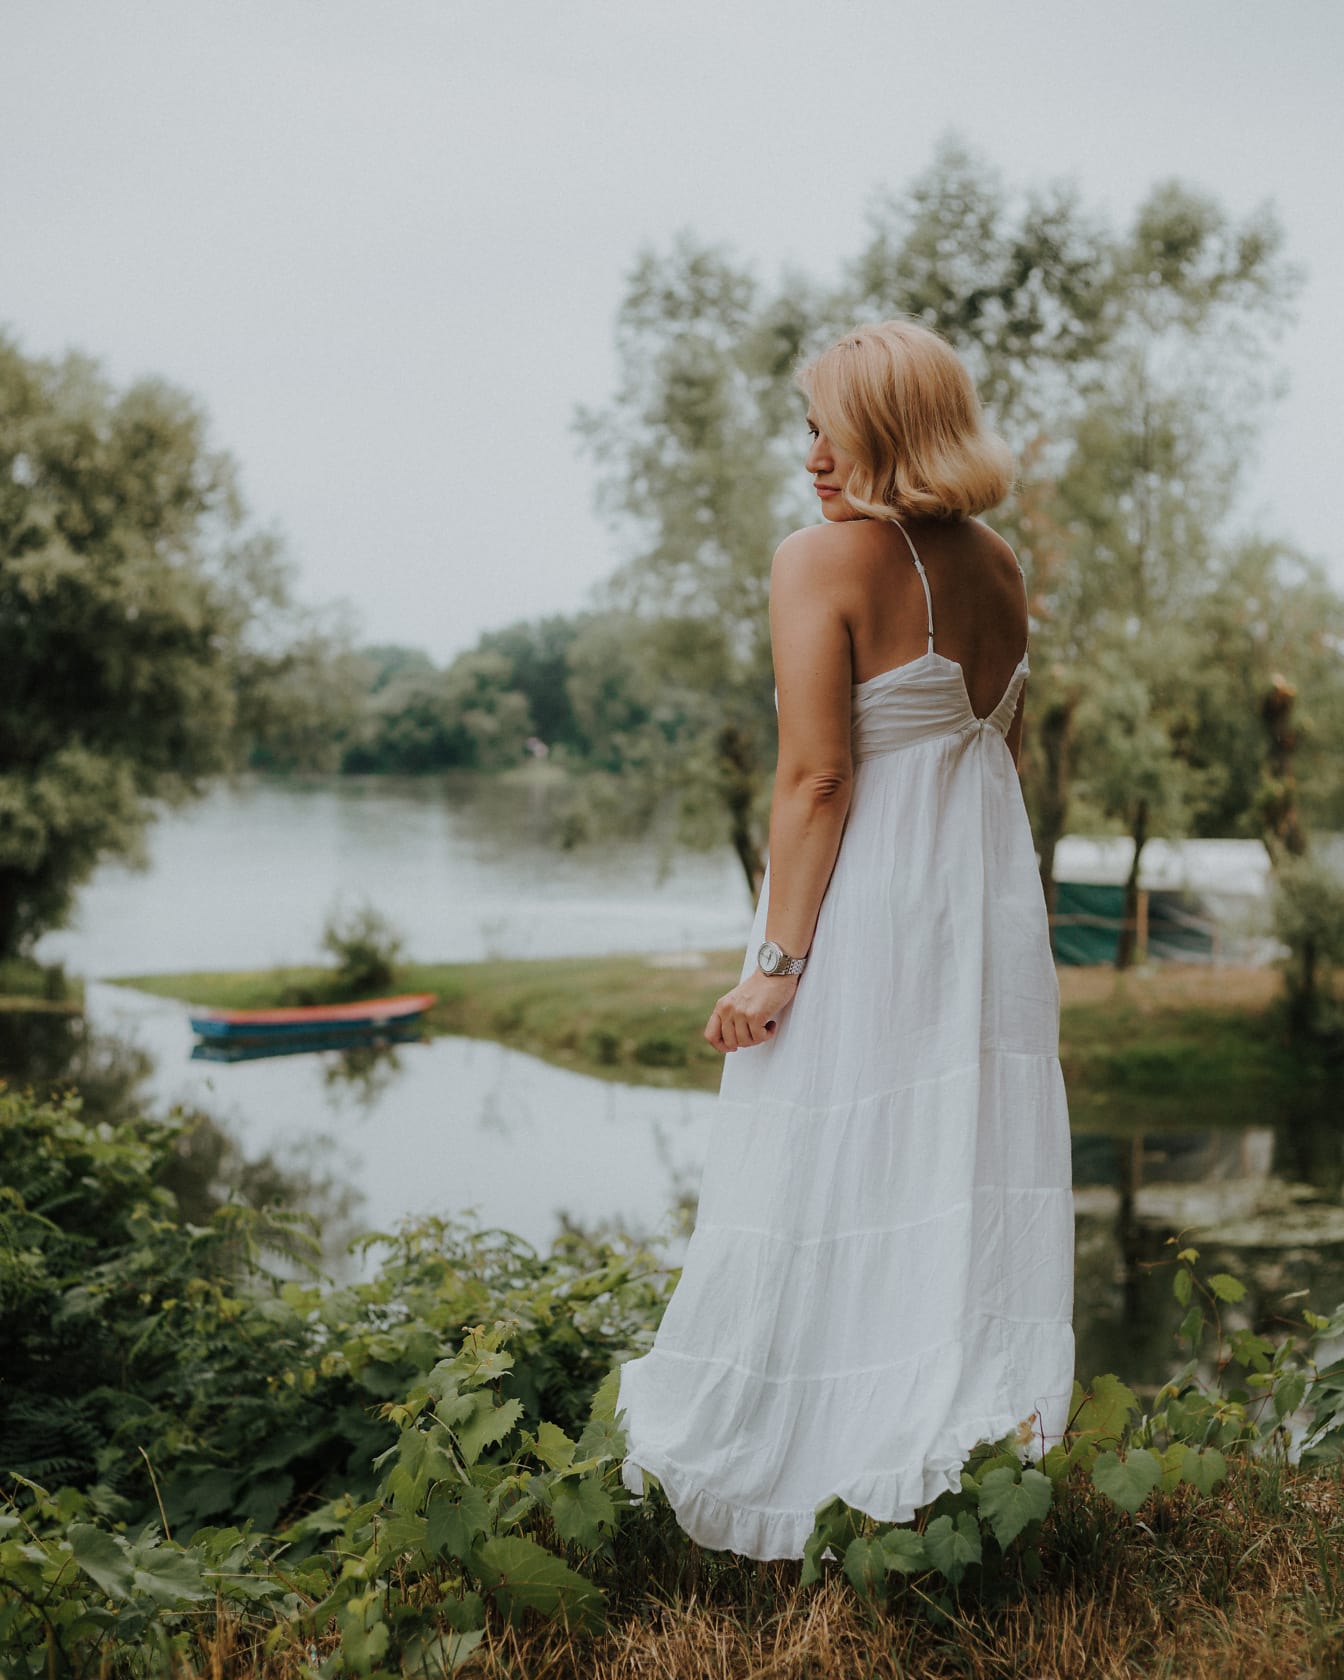 Срамежлива булка в бяла сватбена рокля без гръб стои до реката